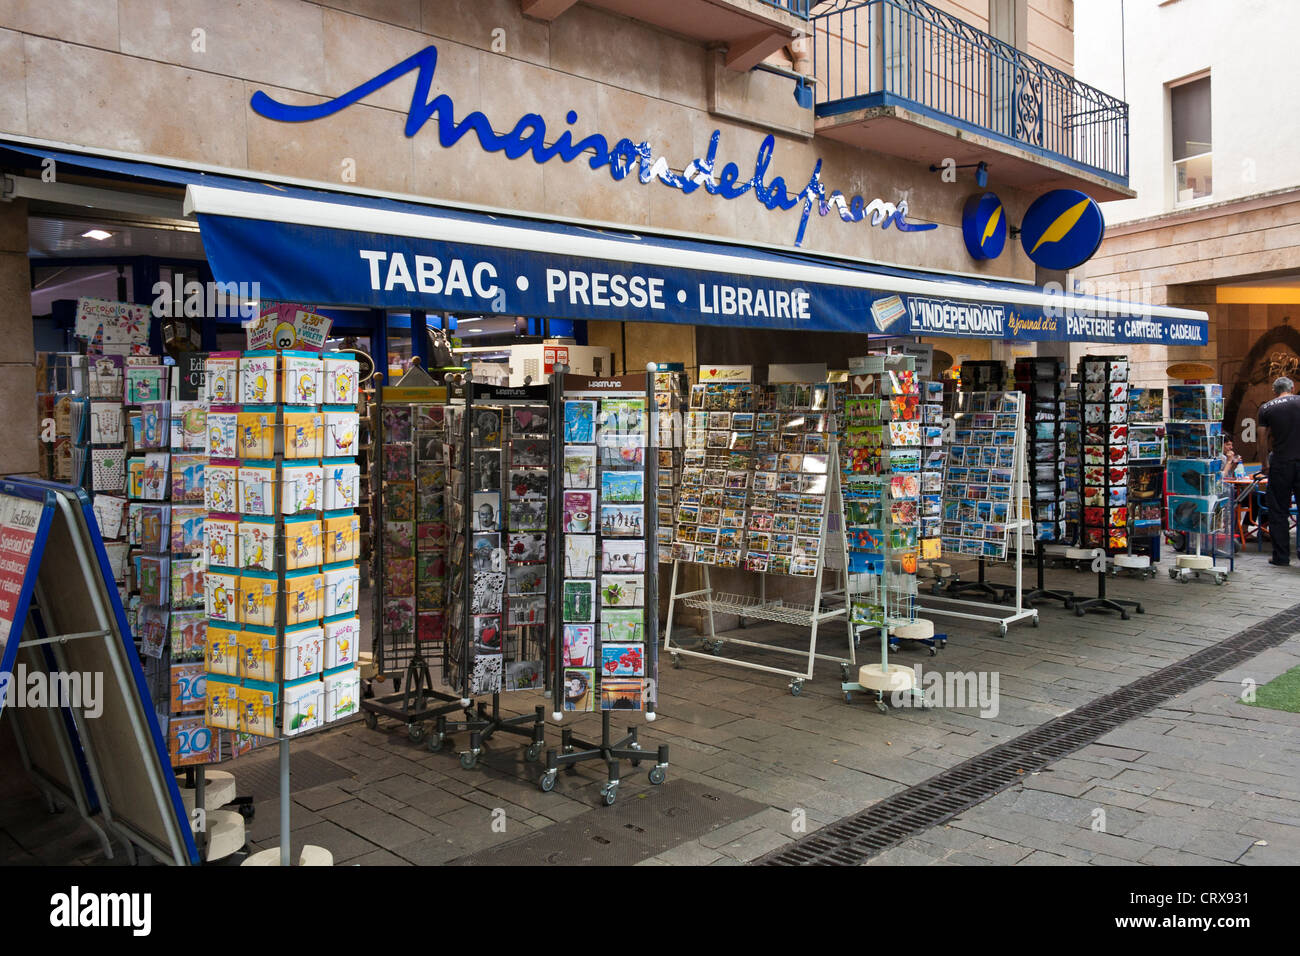 Vue extérieure d'un magasin de tabac/fournitures à Céret, Languedoc-Roussillon, France Banque D'Images